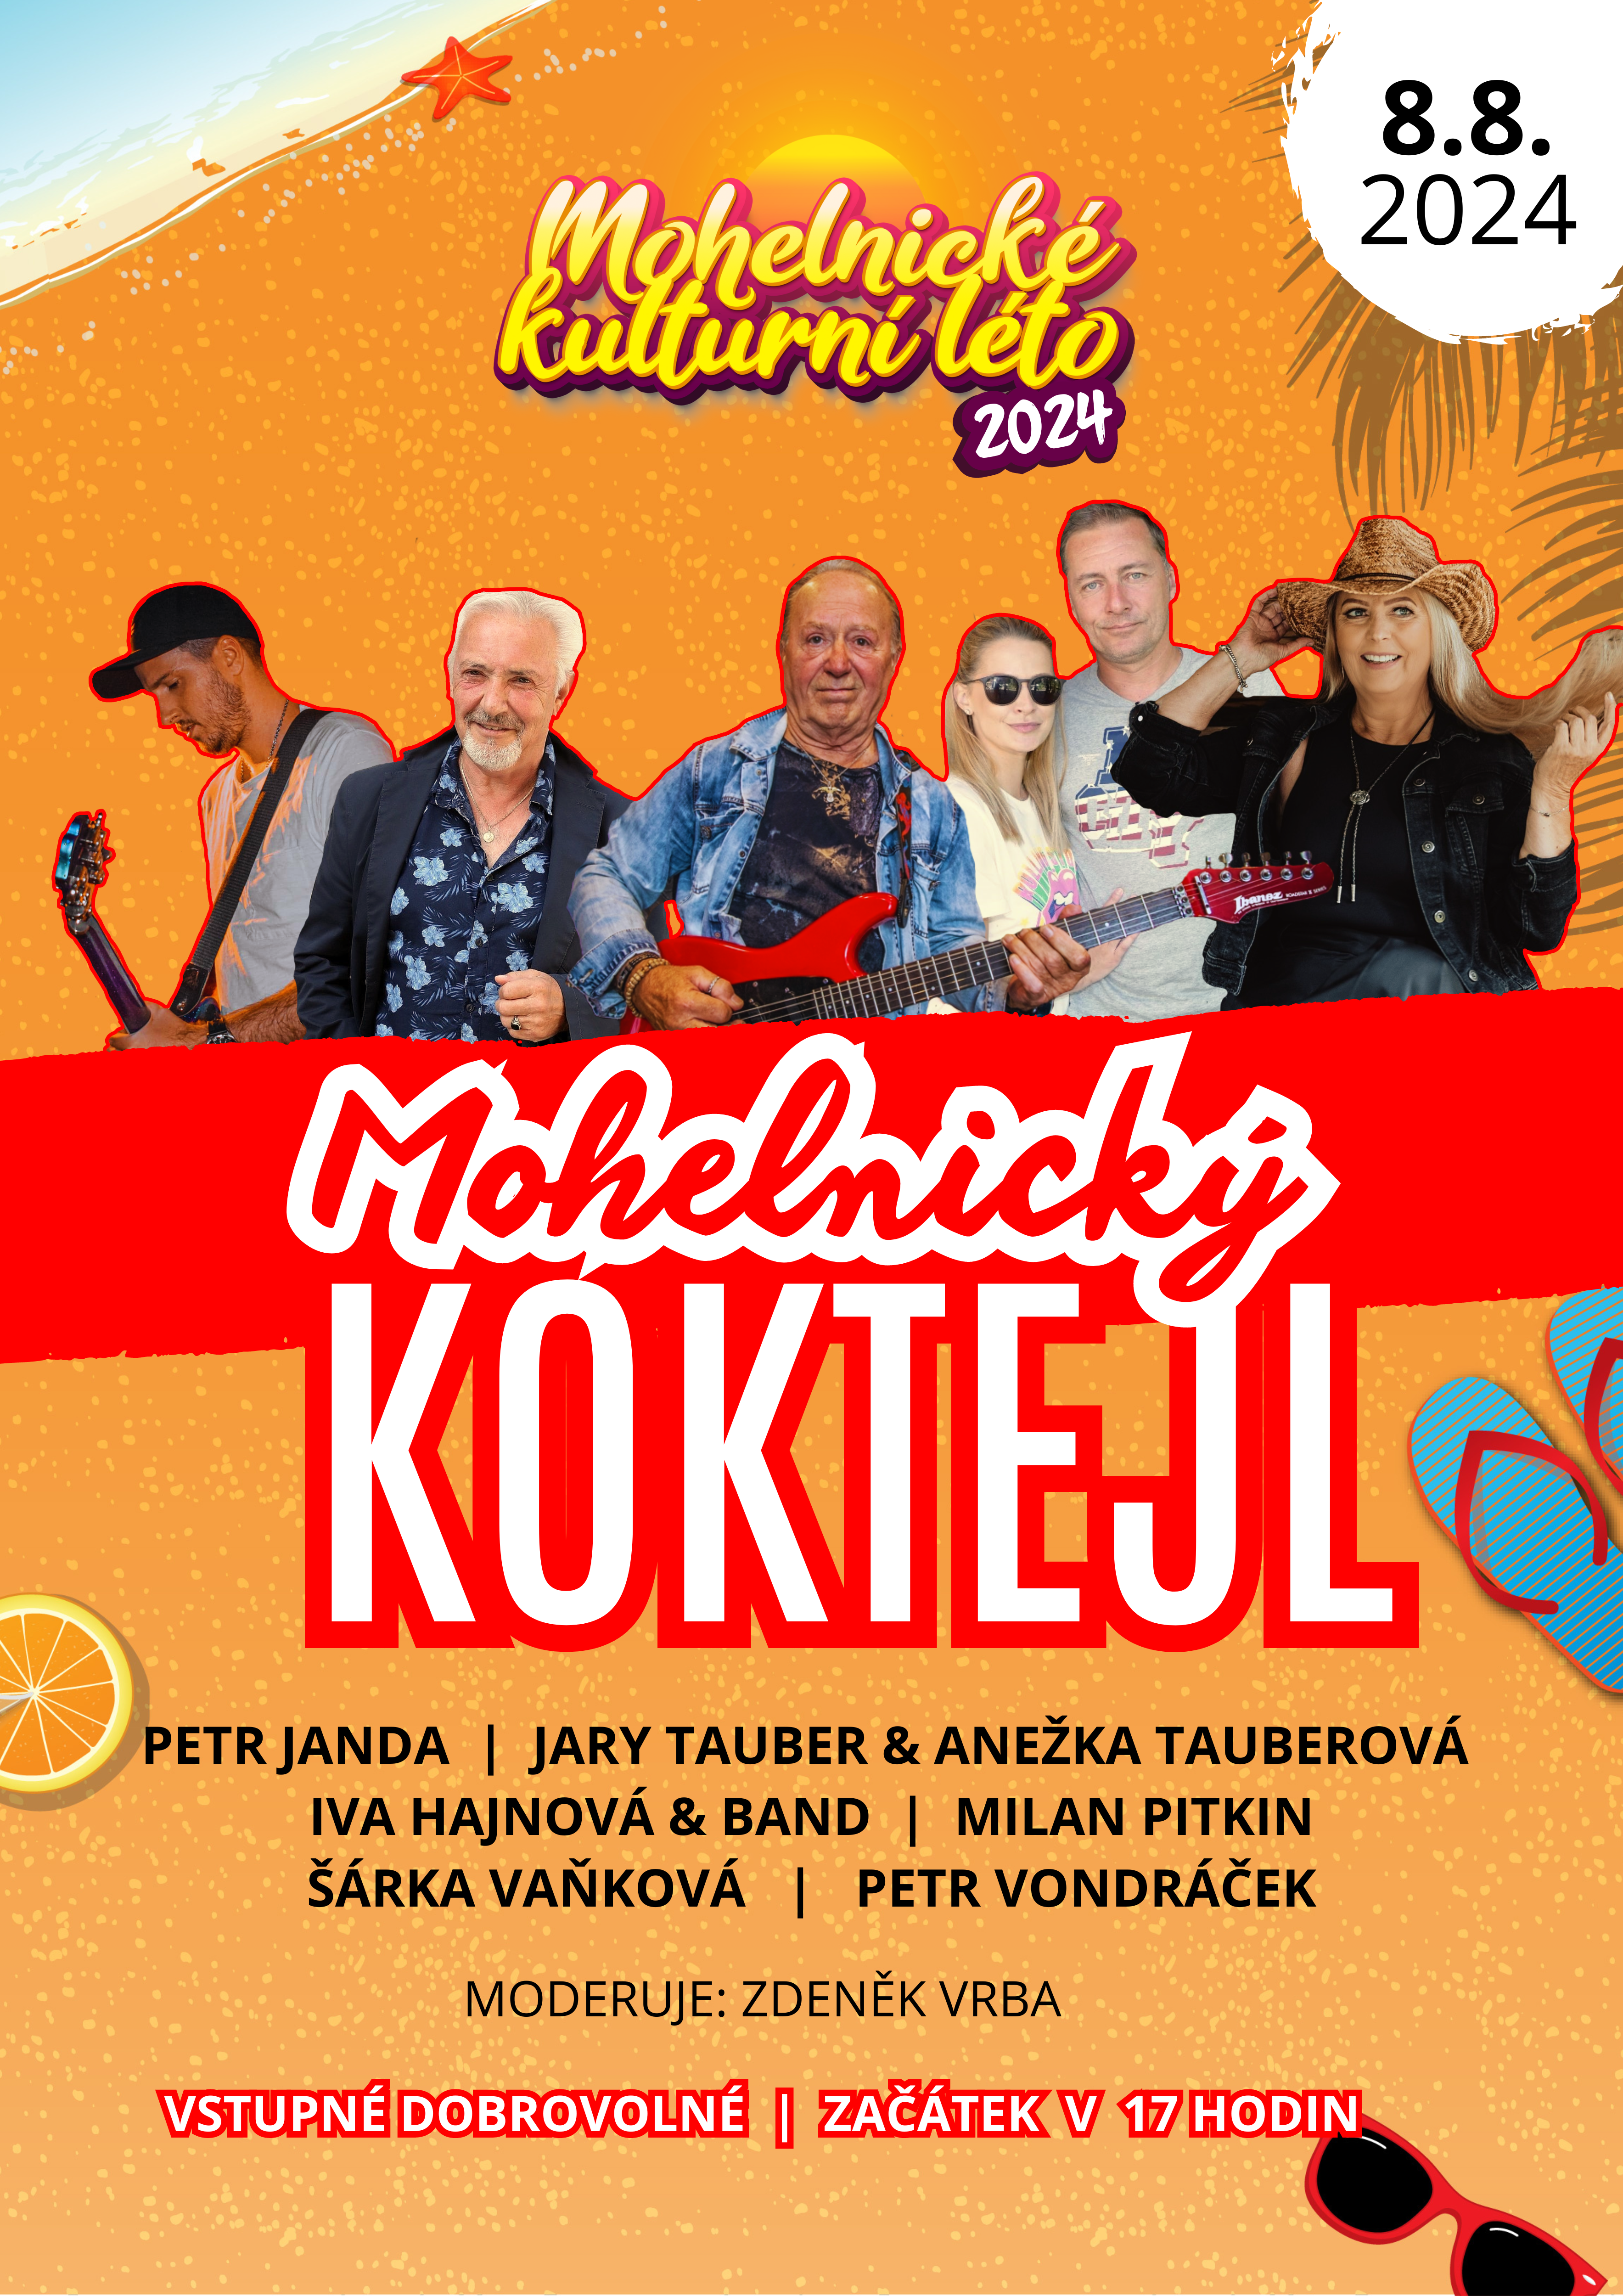 www.mks-mohelnice.cz/akce/9735-mohelnicky-koktejl-jizh